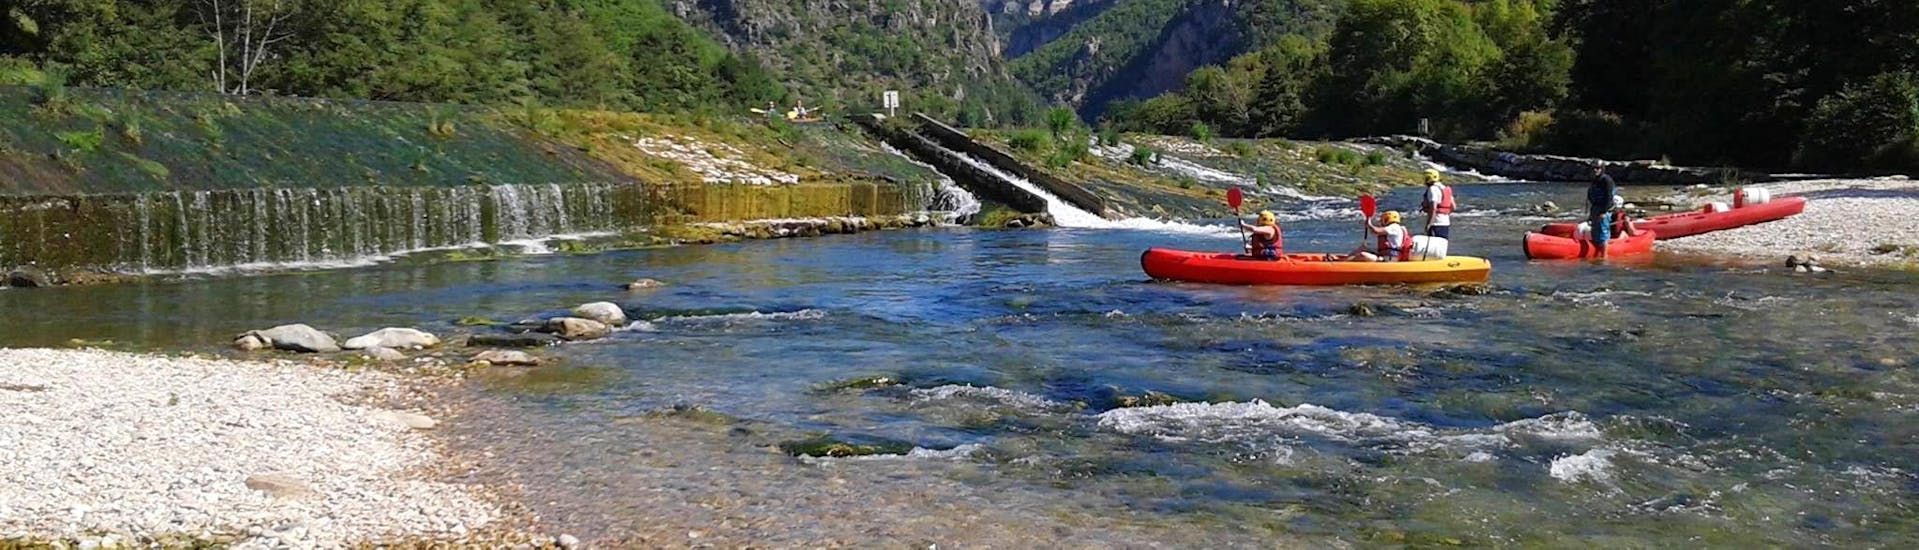 Een groep vrienden vermaakt zich op het water tijdens hun Kanohuur op de rivier de Tarn - Avontuur 18km tocht met Canoë Aigue Vive Gorges du Tarn.